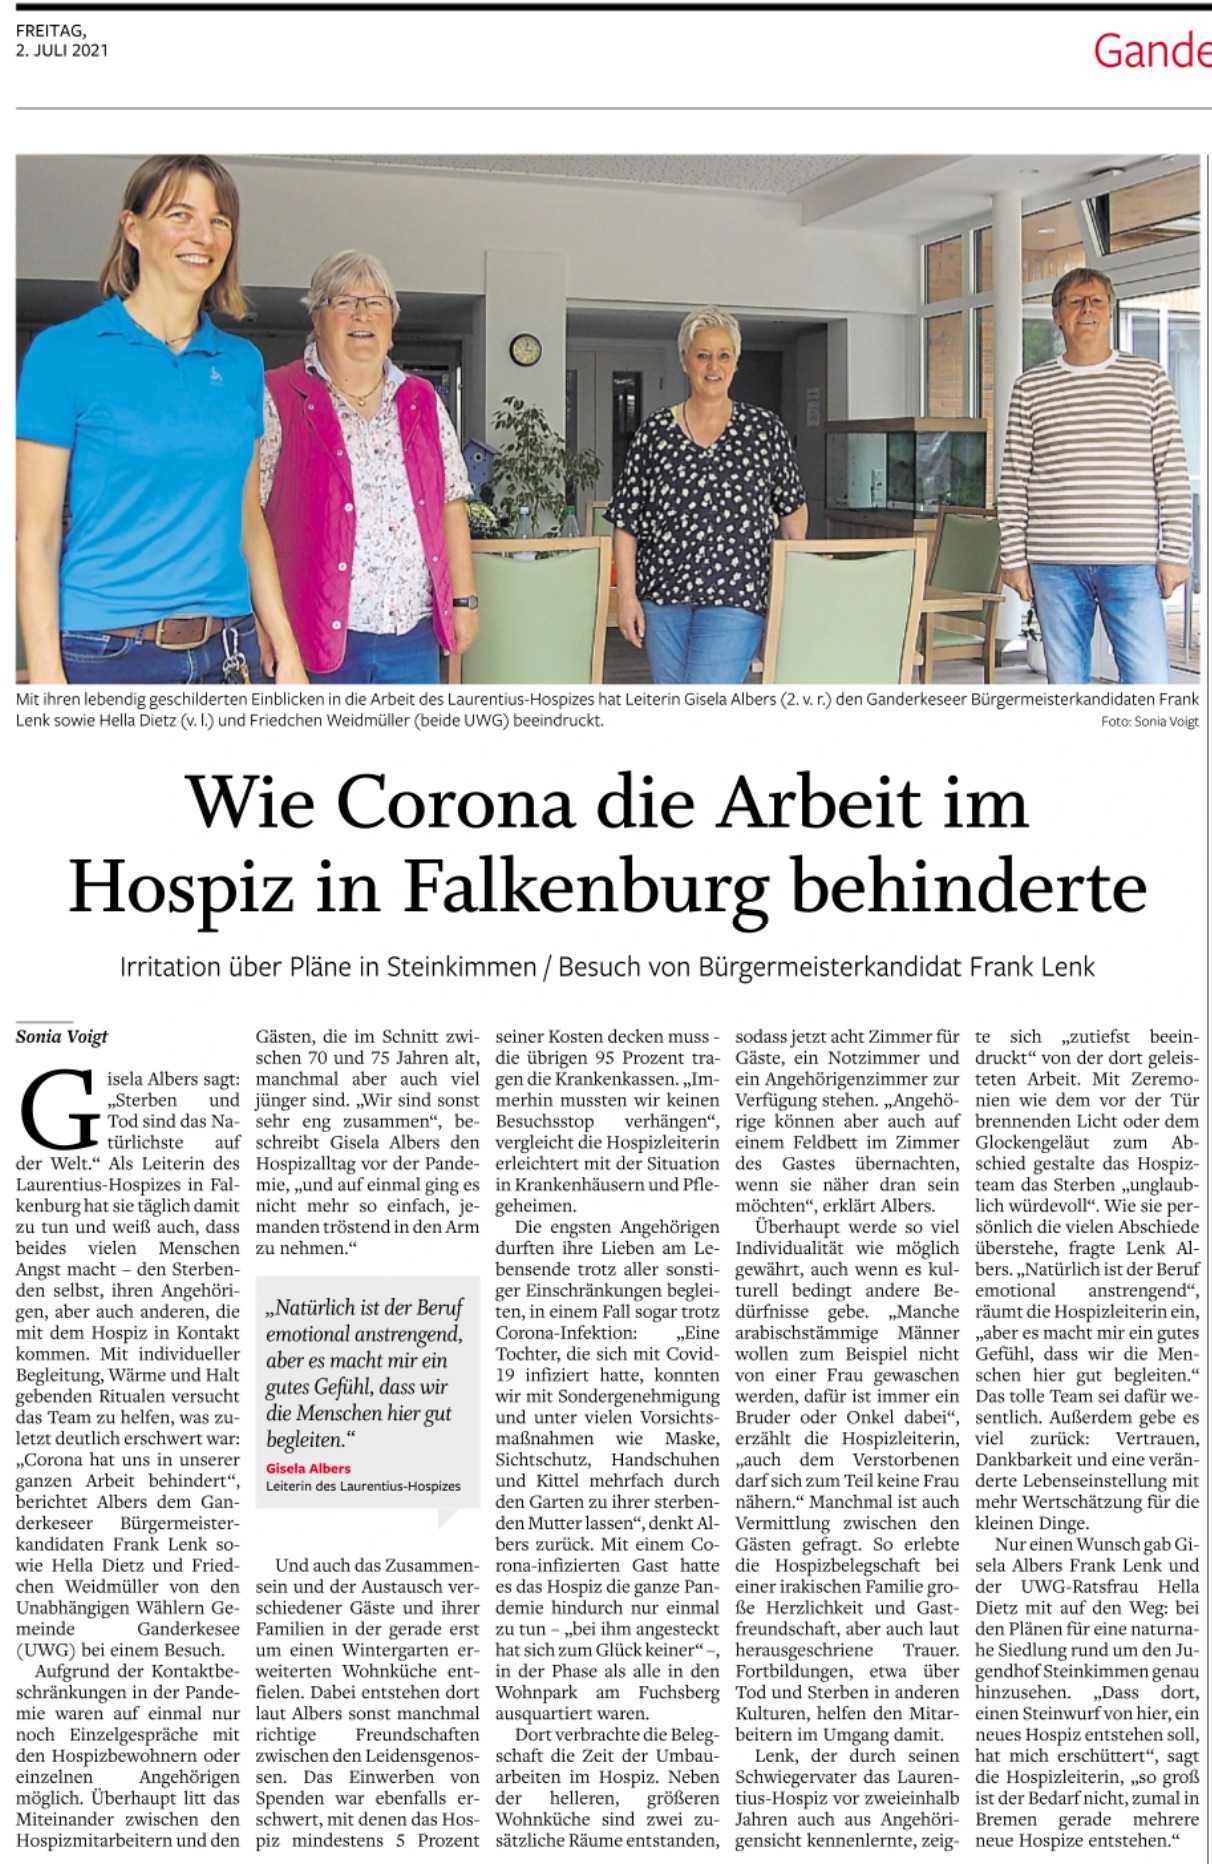 Hella Dietz, Friedchen Weidmüller und Frank Lenk zu Besuch im Hospiz in Falkenburg